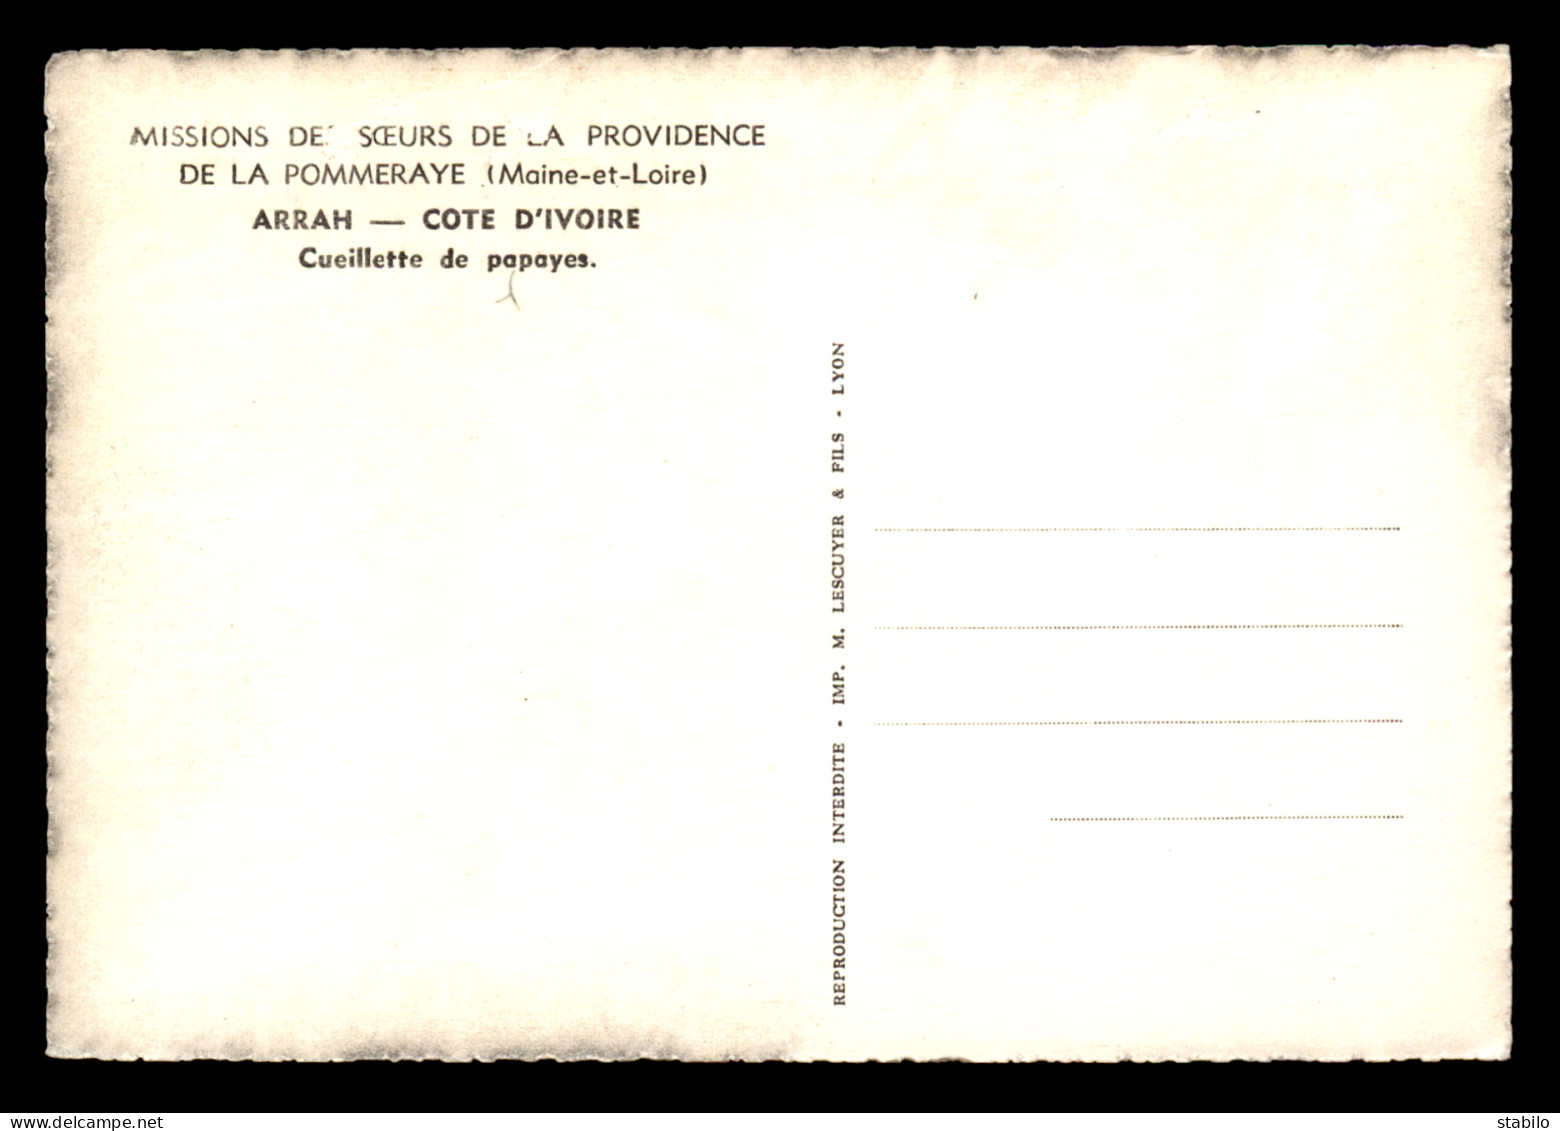 MISSIONS - SOEURS DE LA PROVIDENCE DE LA POMMERAYE (MAINE-ET-LOIRE) - COTE D'IVOIRE - ARRAH - CUEILLETTE DE PAPAYES - Missioni